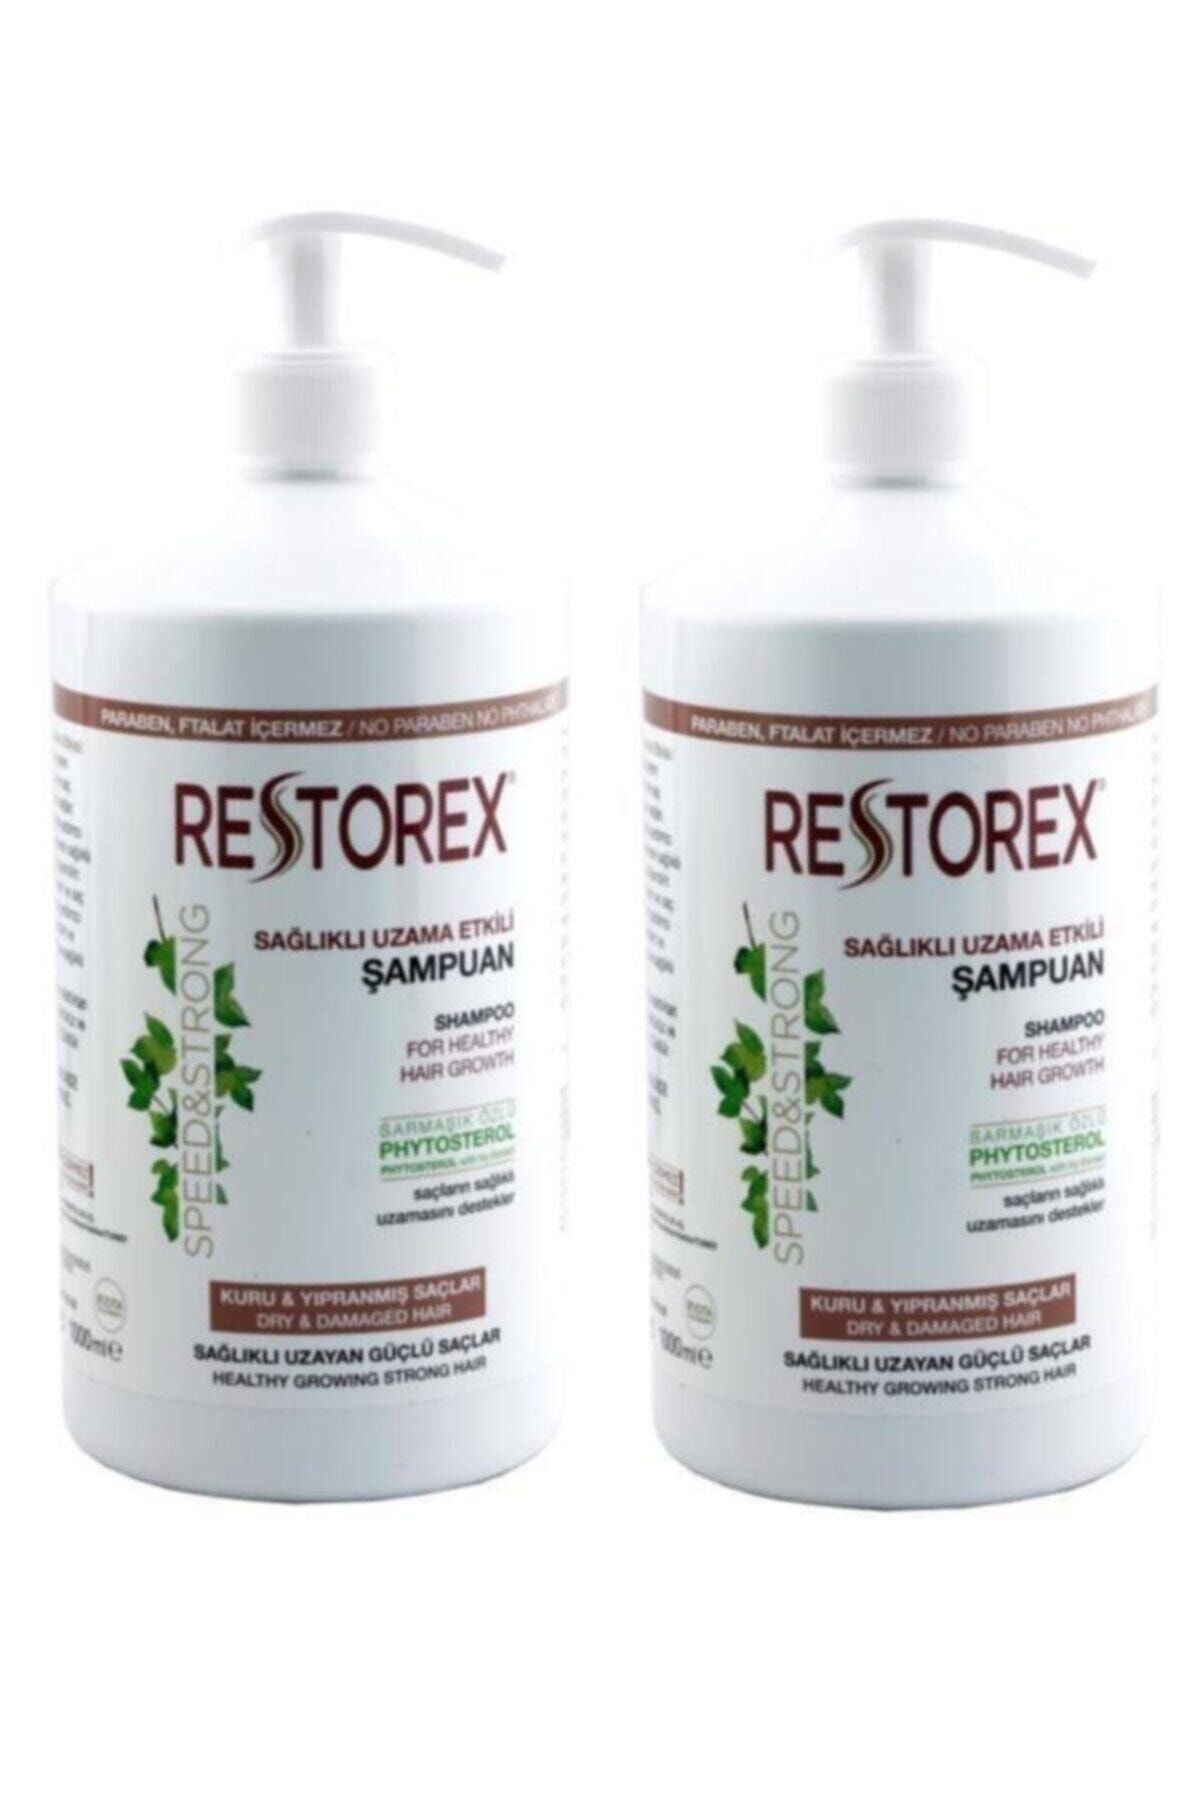 Restorex 2 Adet Şampuan Kuru Ve Yıpranmış Saçlar 1000 ml Sağlıklı Uzama Etkili